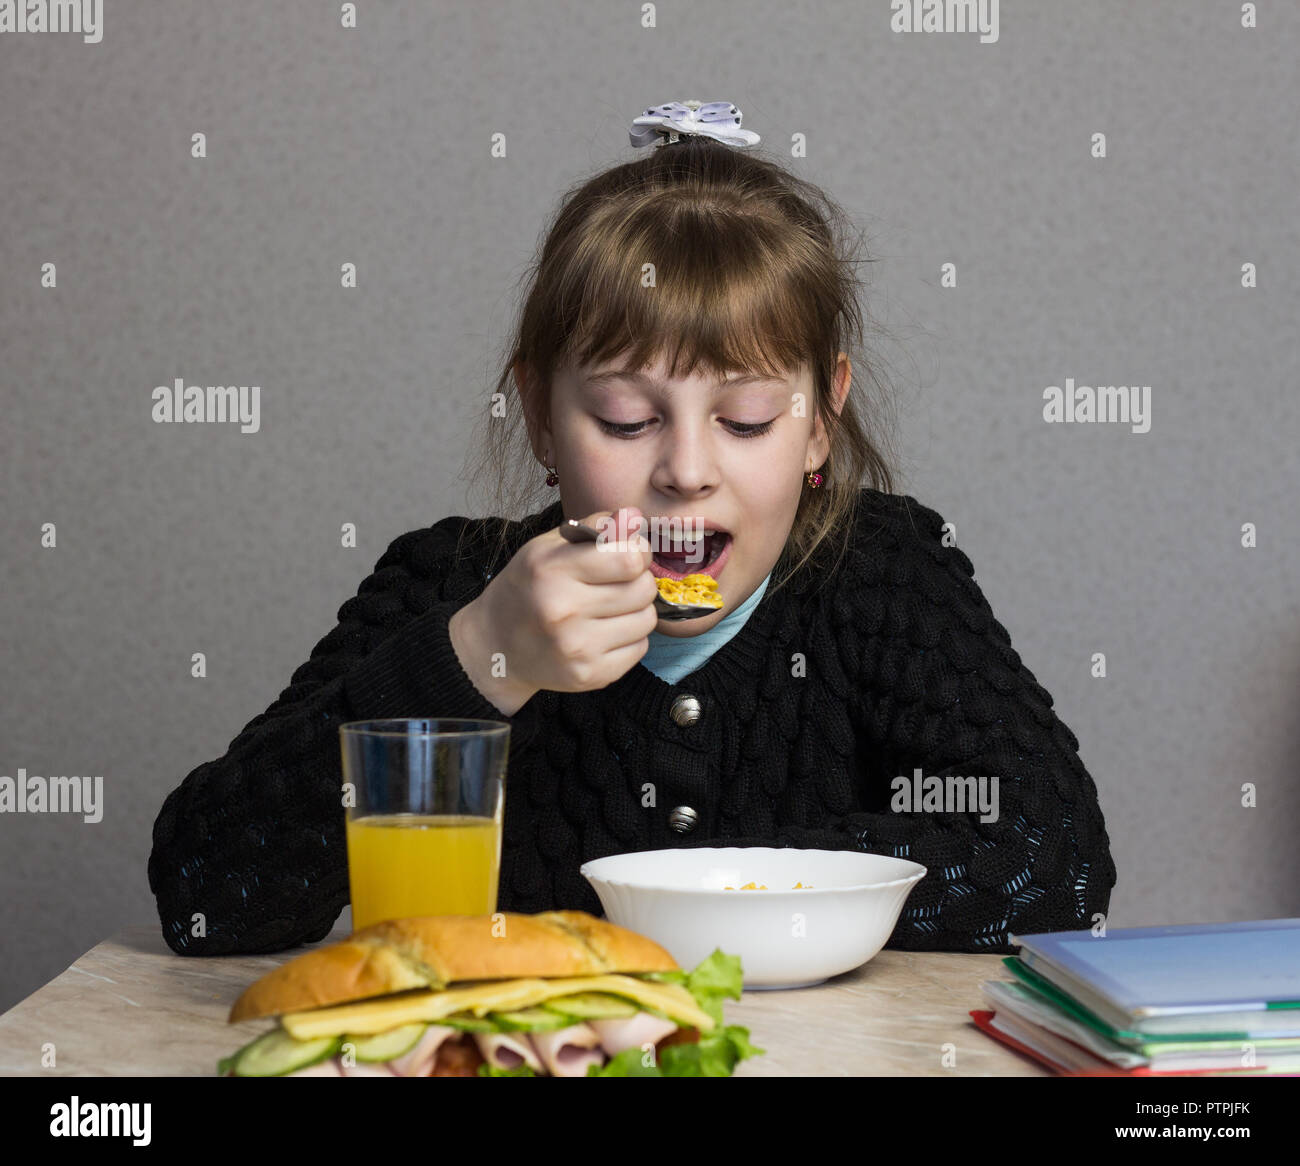 Une fille de 9 à 10 ans petit déjeuner avant de partir pour l'école, sur la table d'un manuel et d'un sandwich Banque D'Images